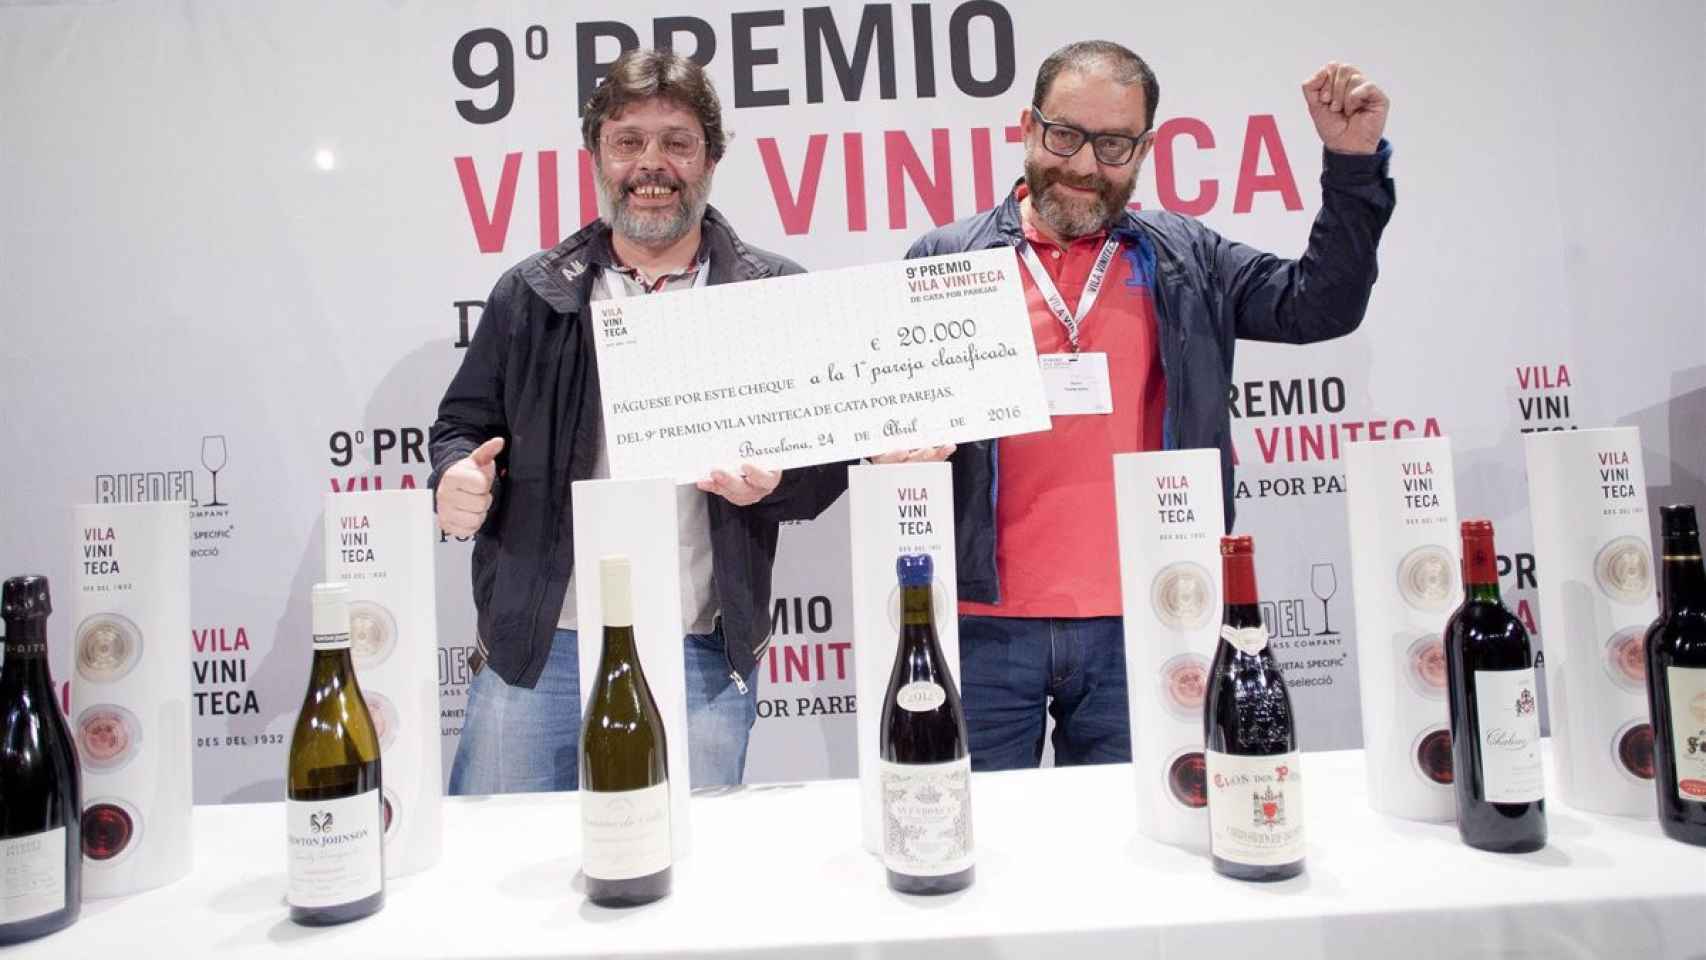 Dos ingenieros industriales ganan el Premio Vila Viniteca de cata por parejas en Barcelona en 2016